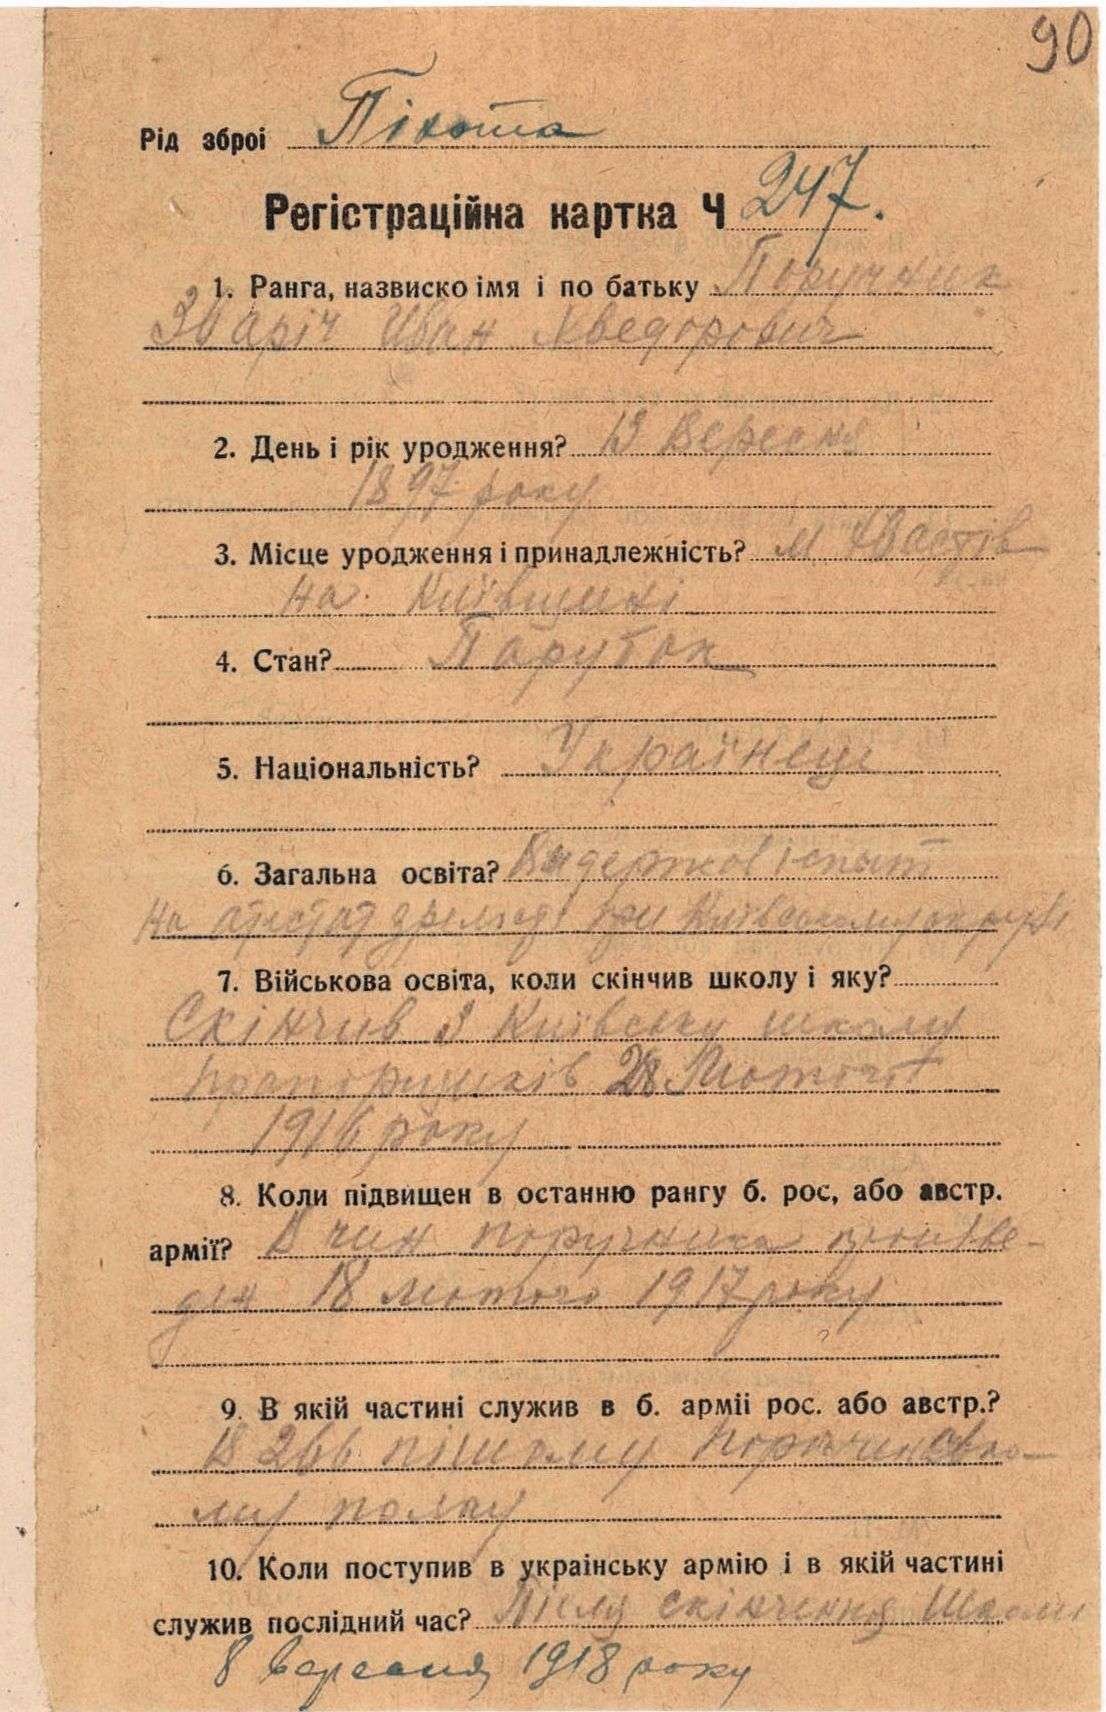 Реєстраційна картка військового. 23 травня 1920 р. (м. Вінниця).